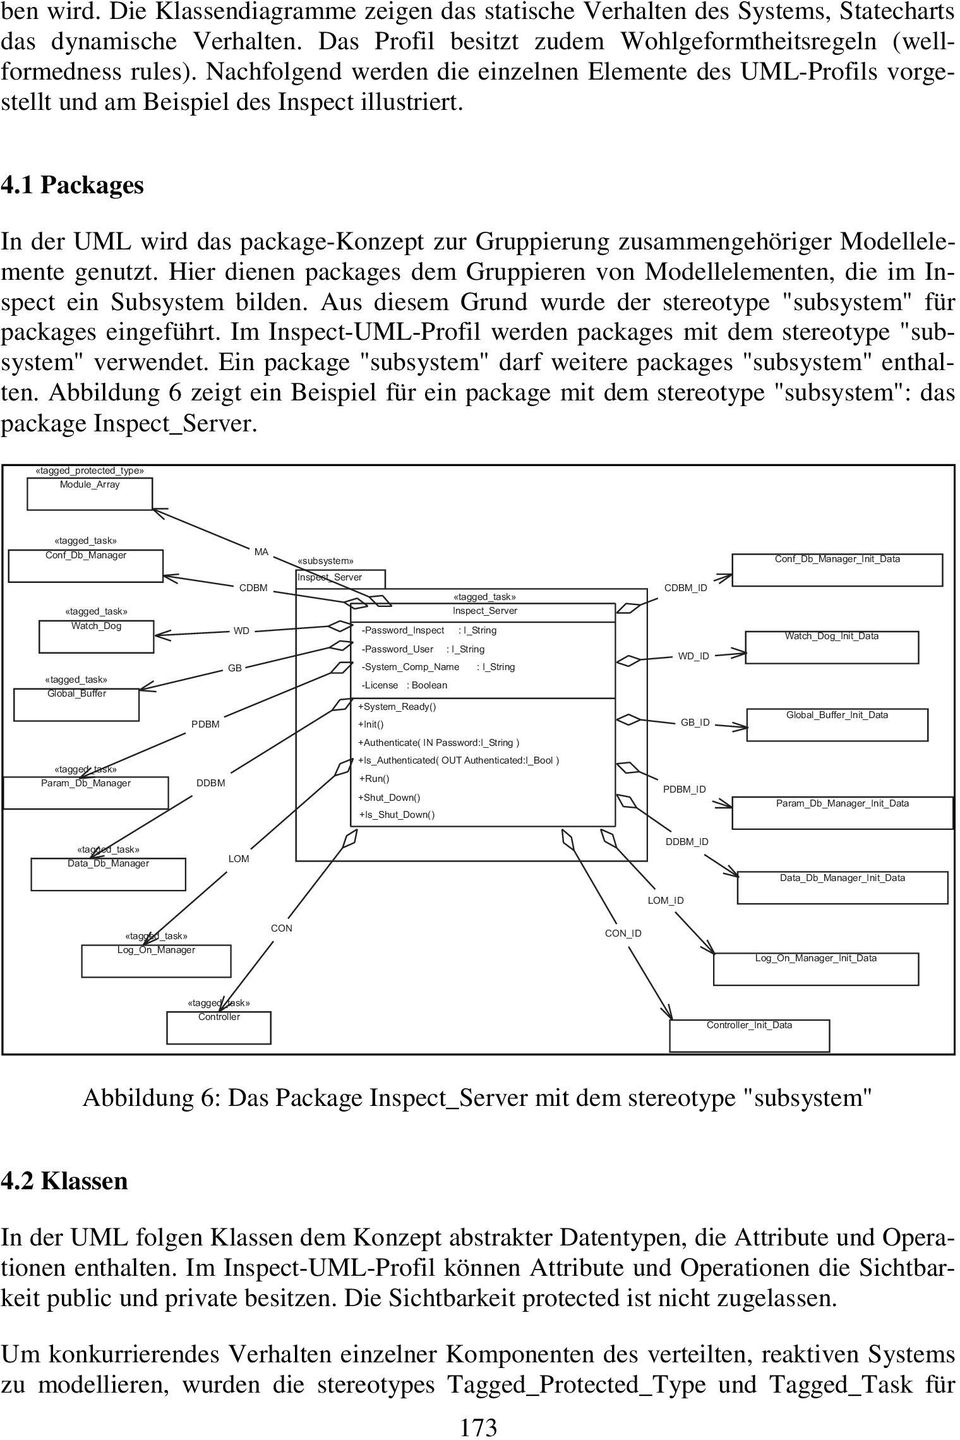 1 Packages In der UML wird das package-konzept zur Gruppierung zusammengehöriger Modellelemente genutzt. Hier dienen packages dem Gruppieren von Modellelementen, die im Inspect ein Subsystem bilden.